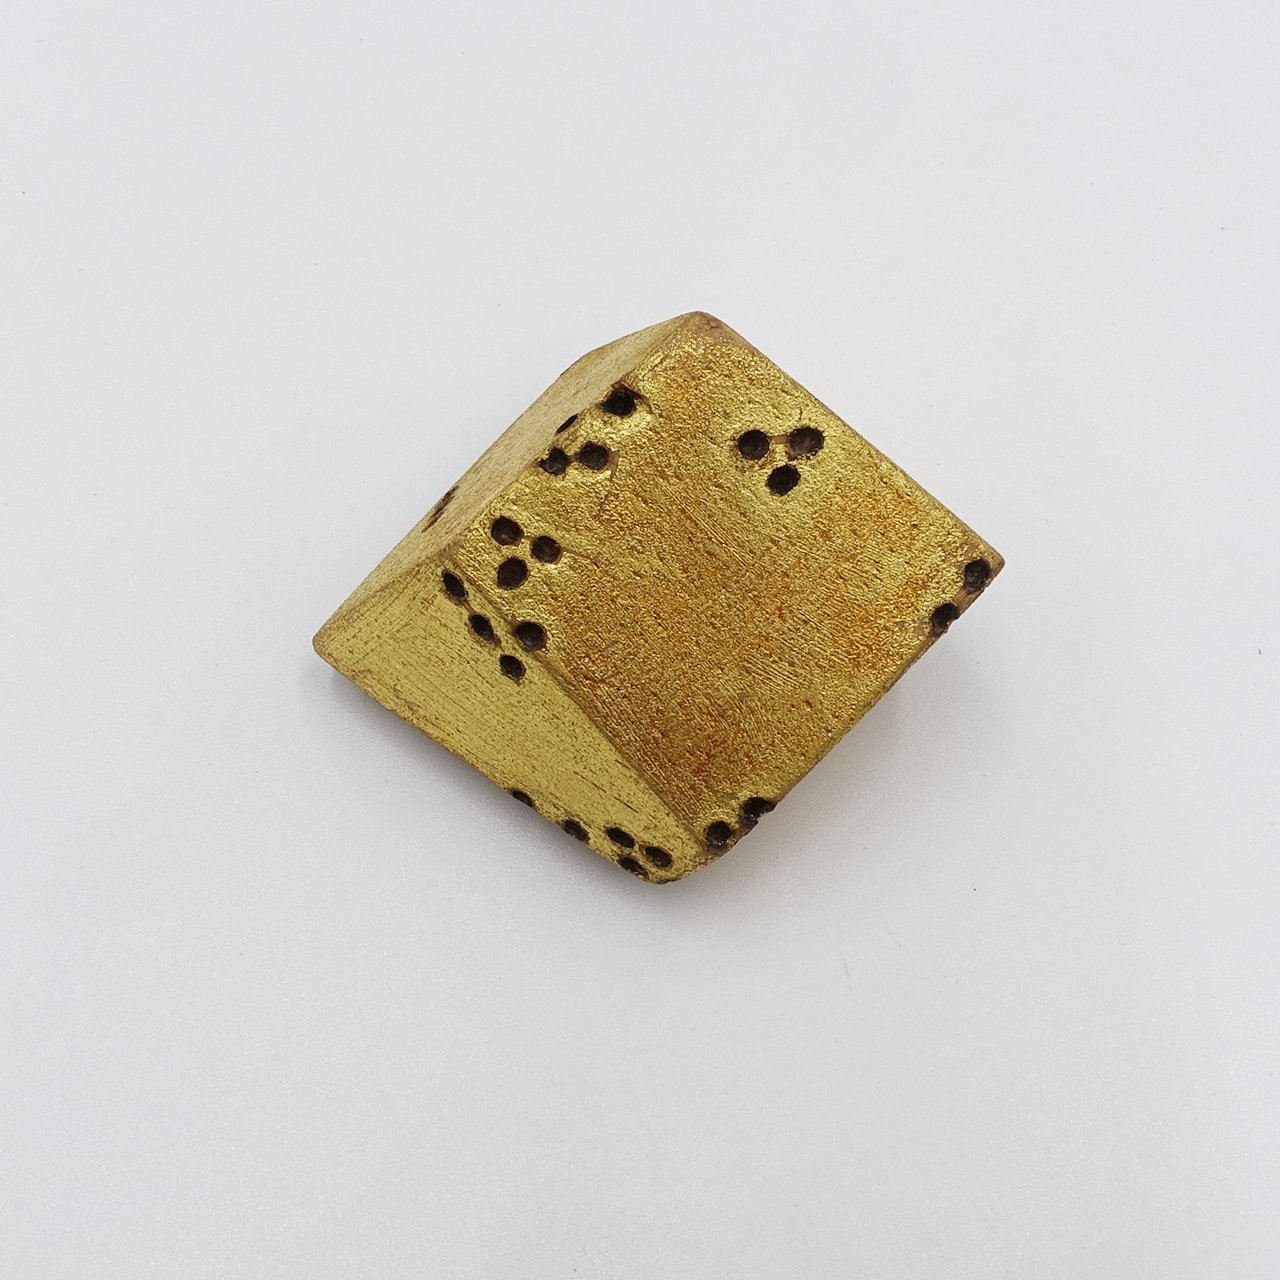 Golden Cube by Beppe Kessler